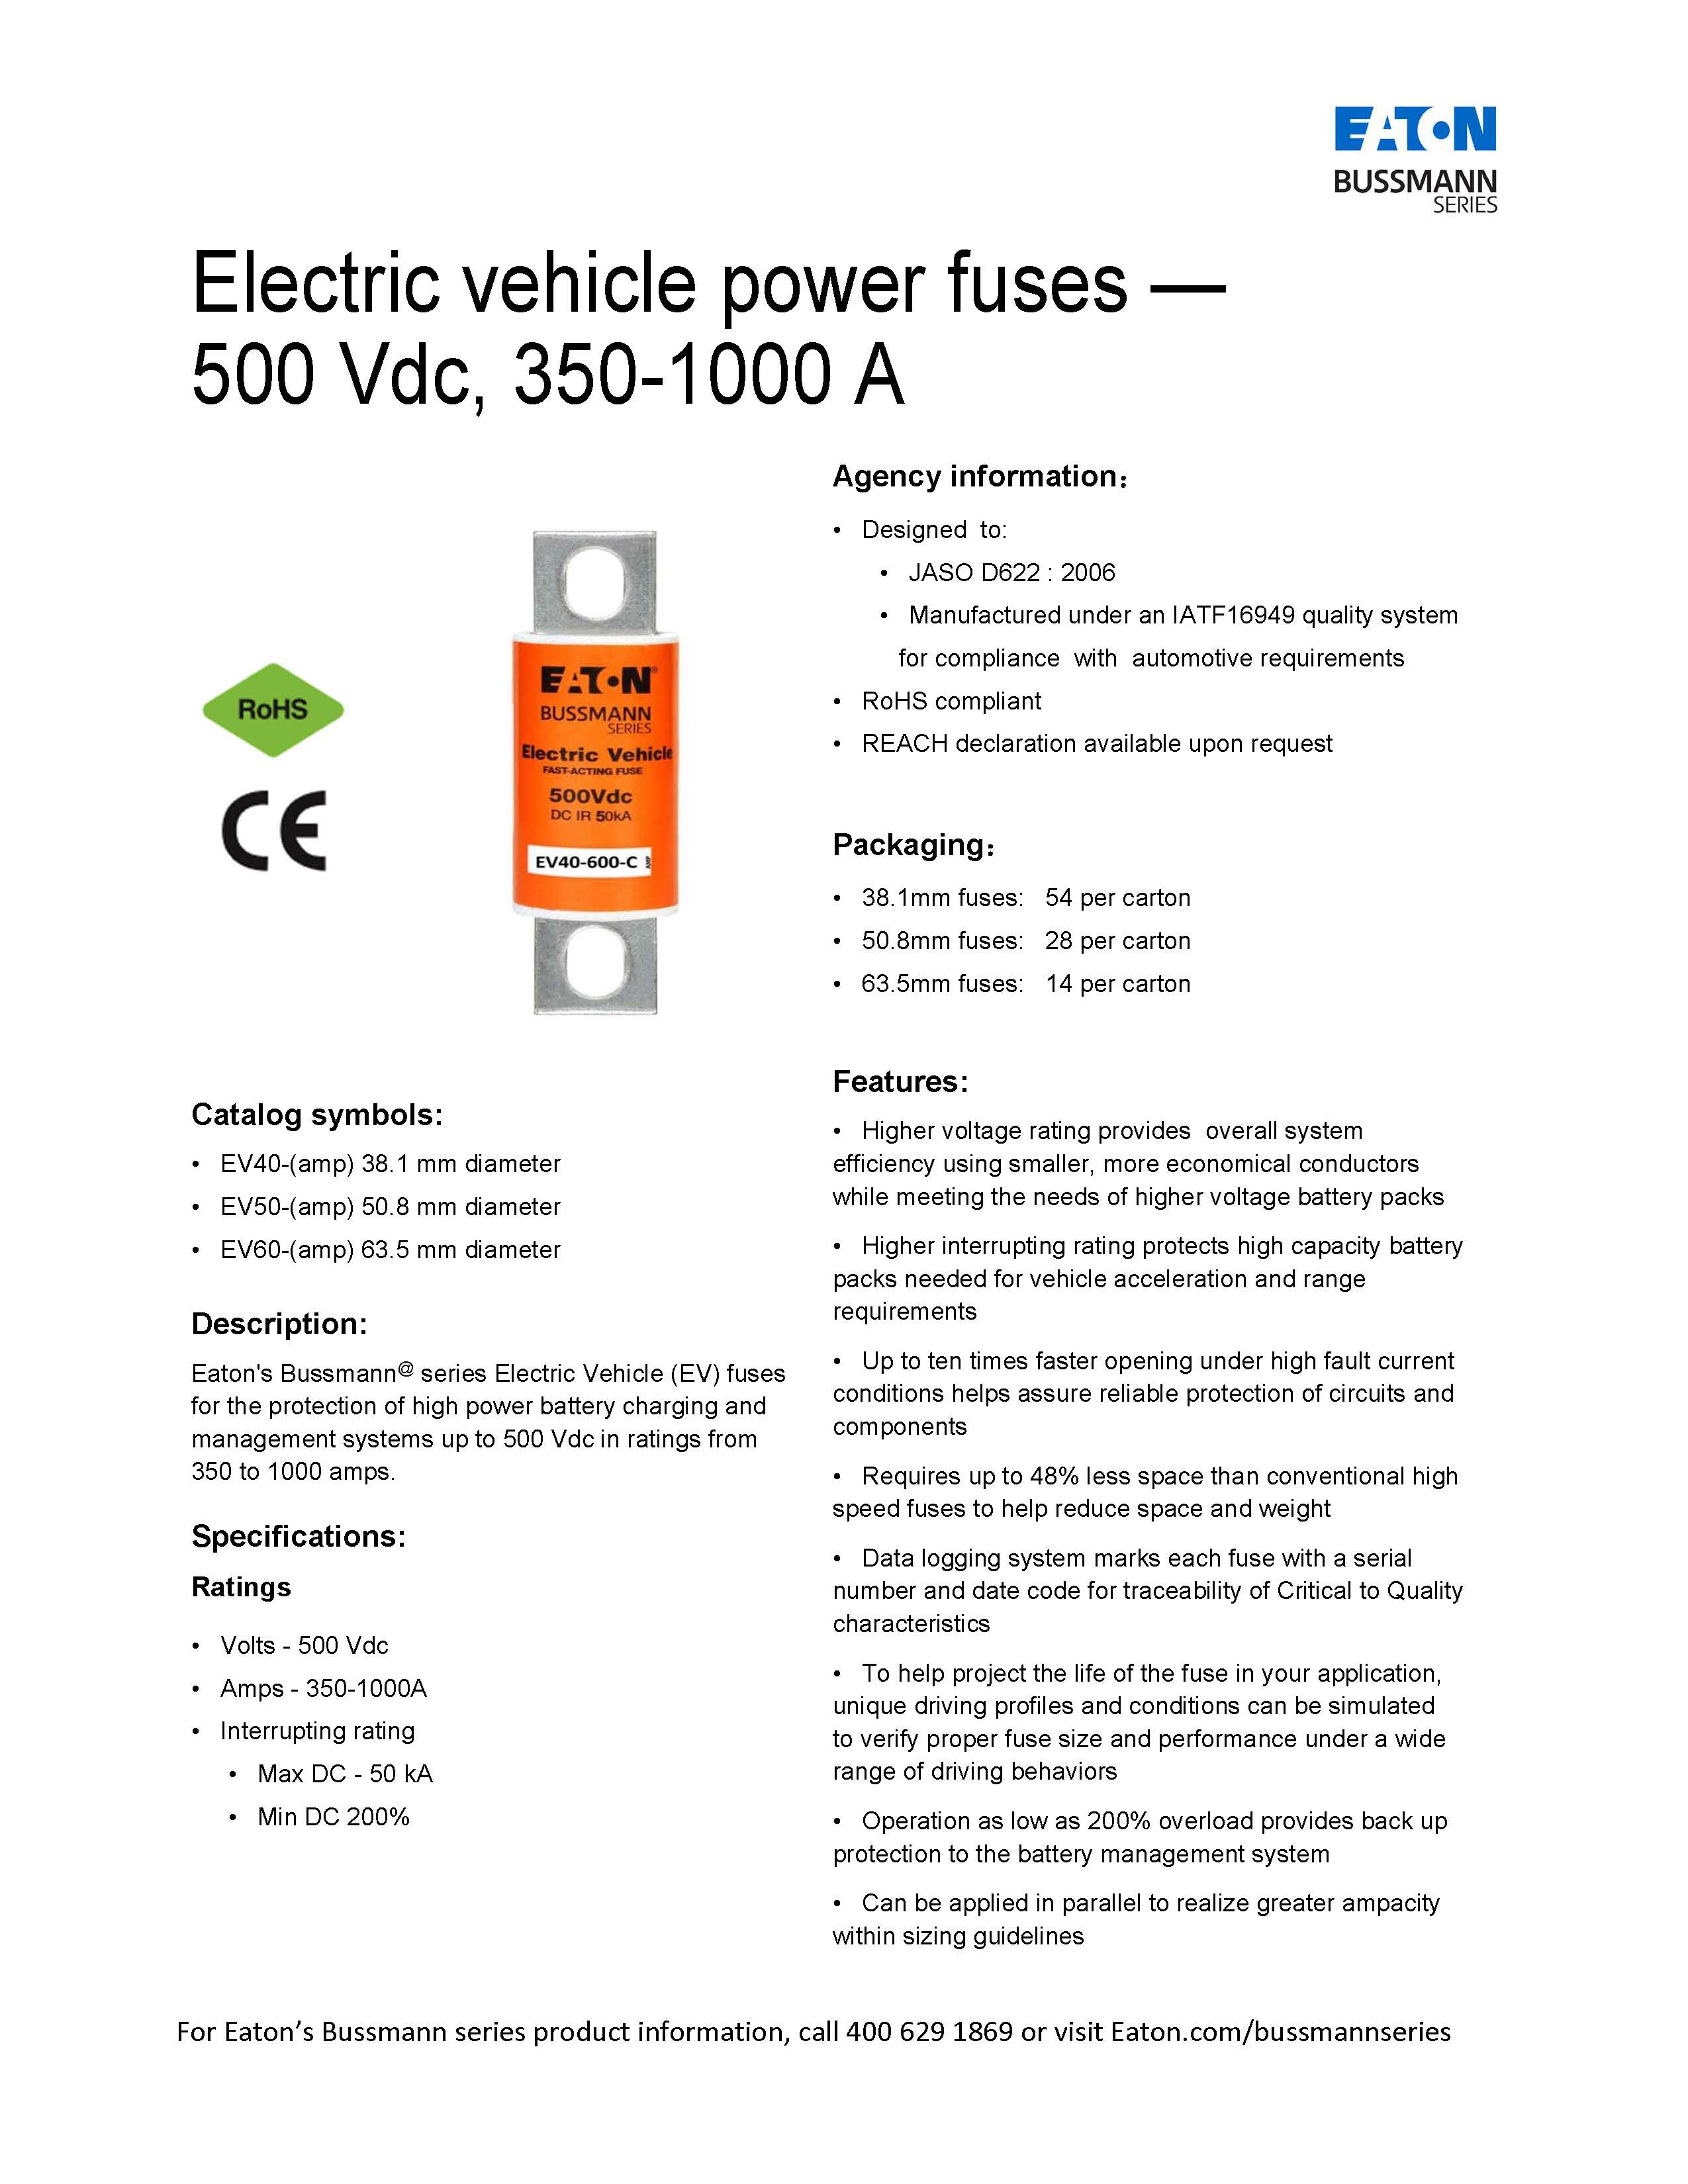 EV40 500VDC电动汽车熔断器